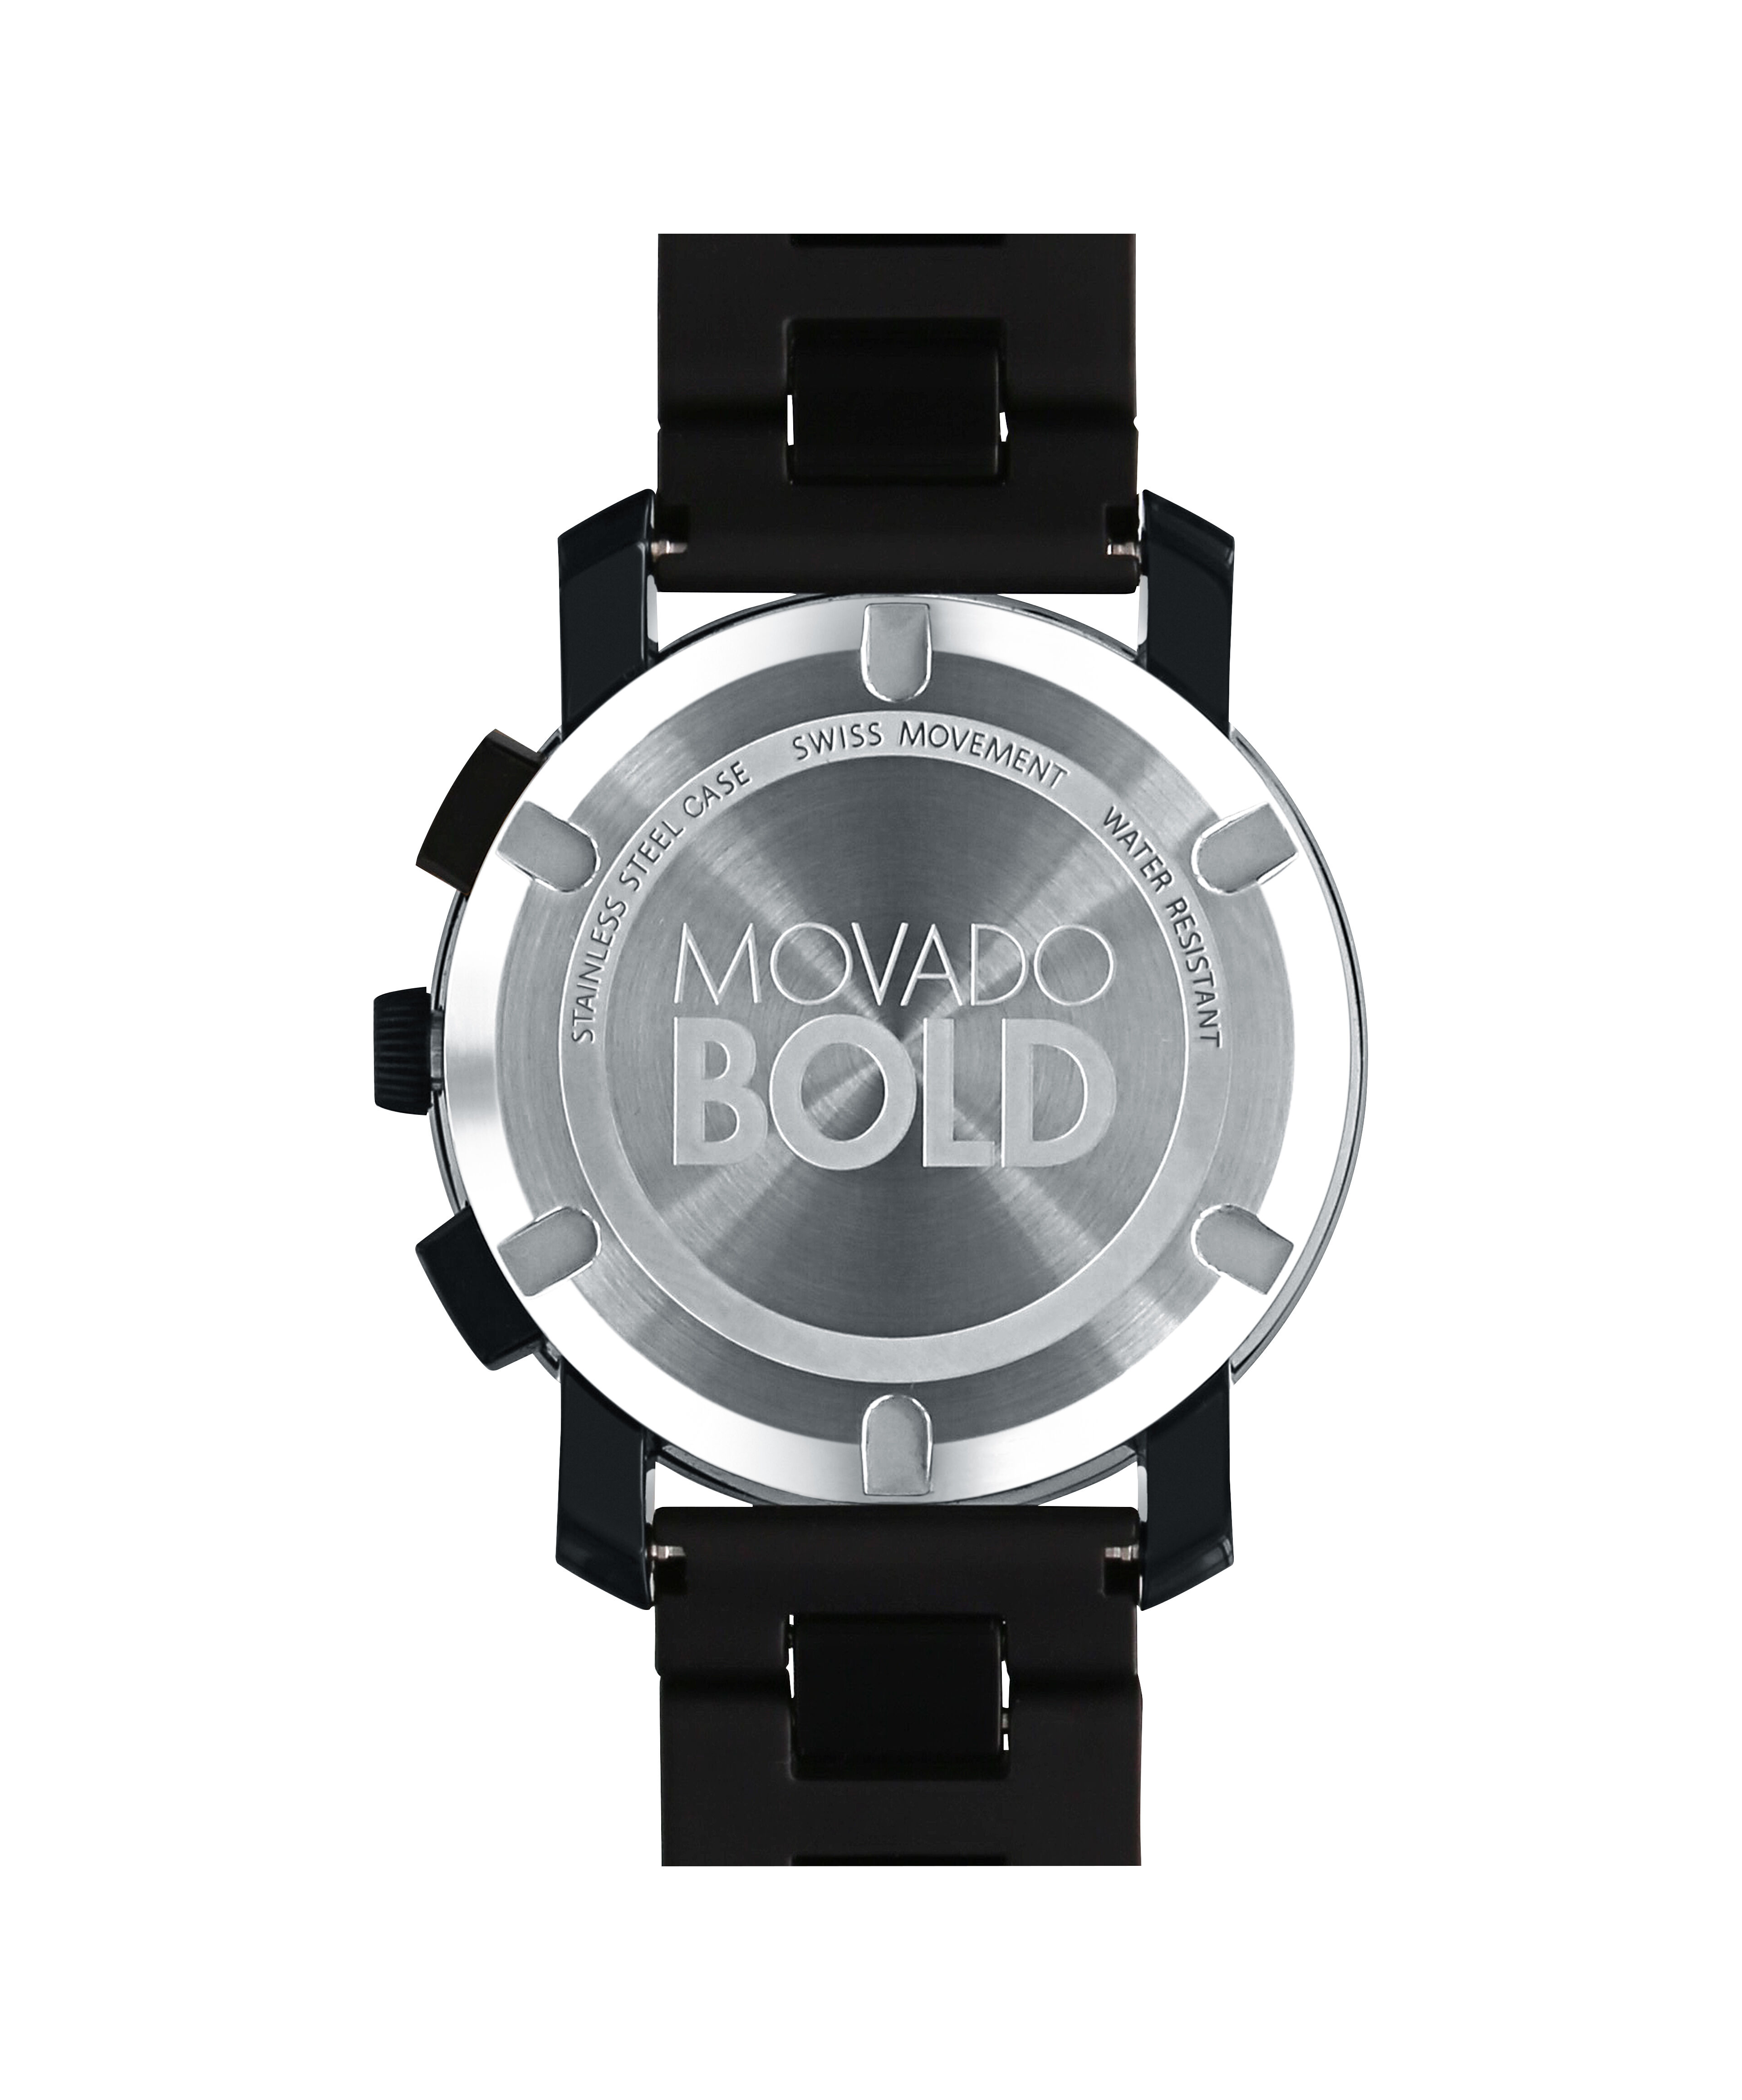 Replica Rolex Watch USA.